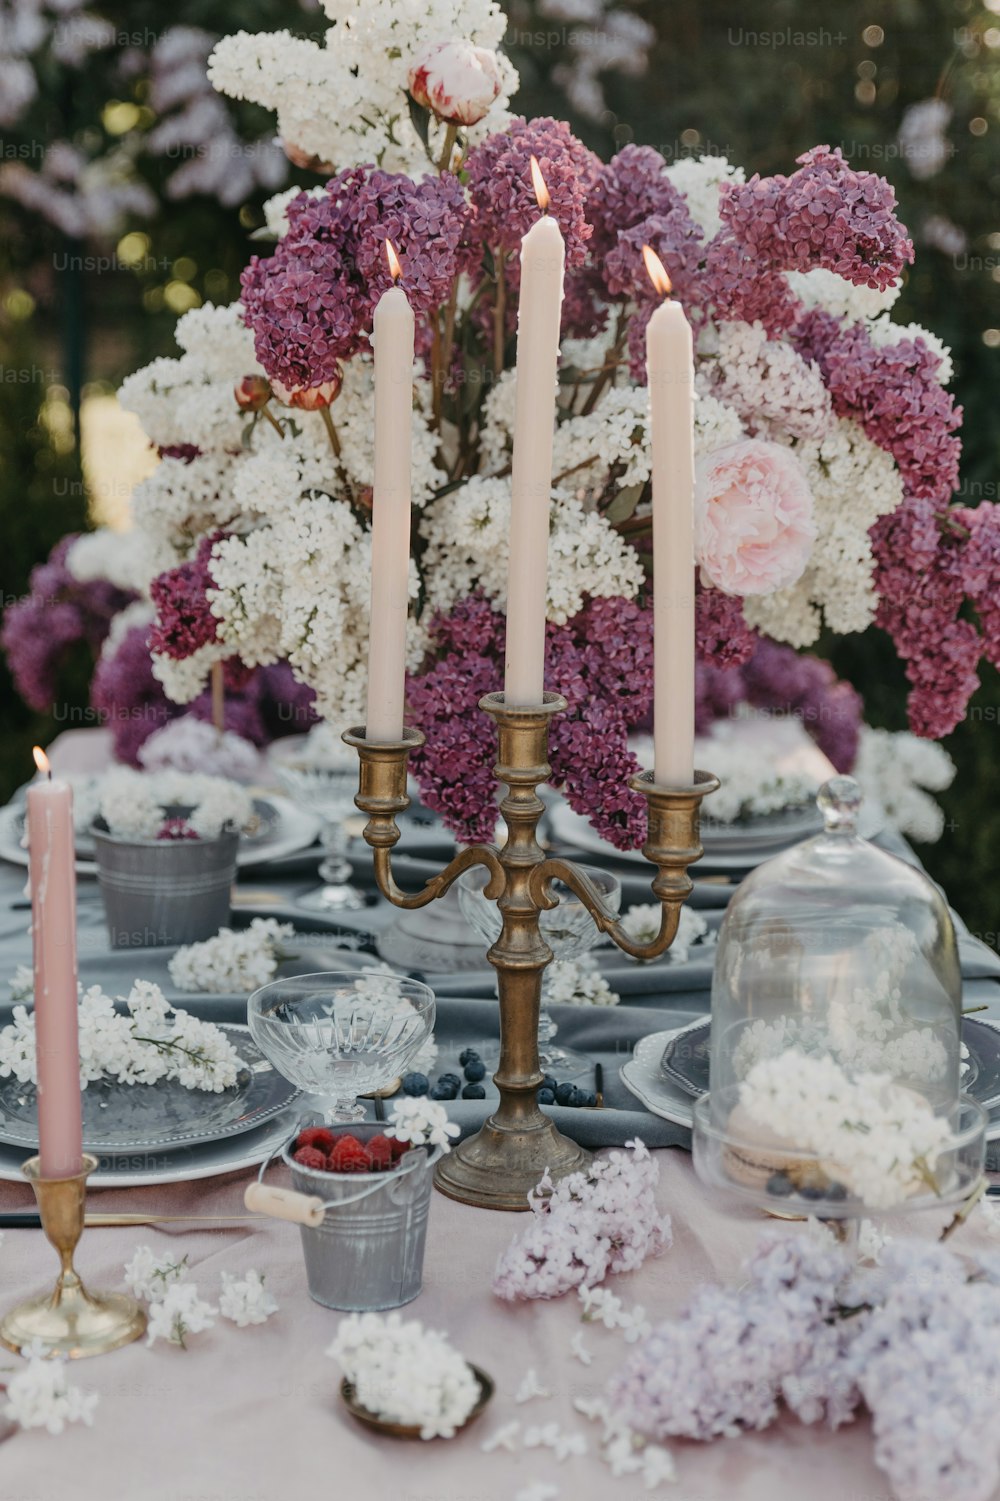 Un tavolo sormontato da un sacco di fiori viola e bianchi